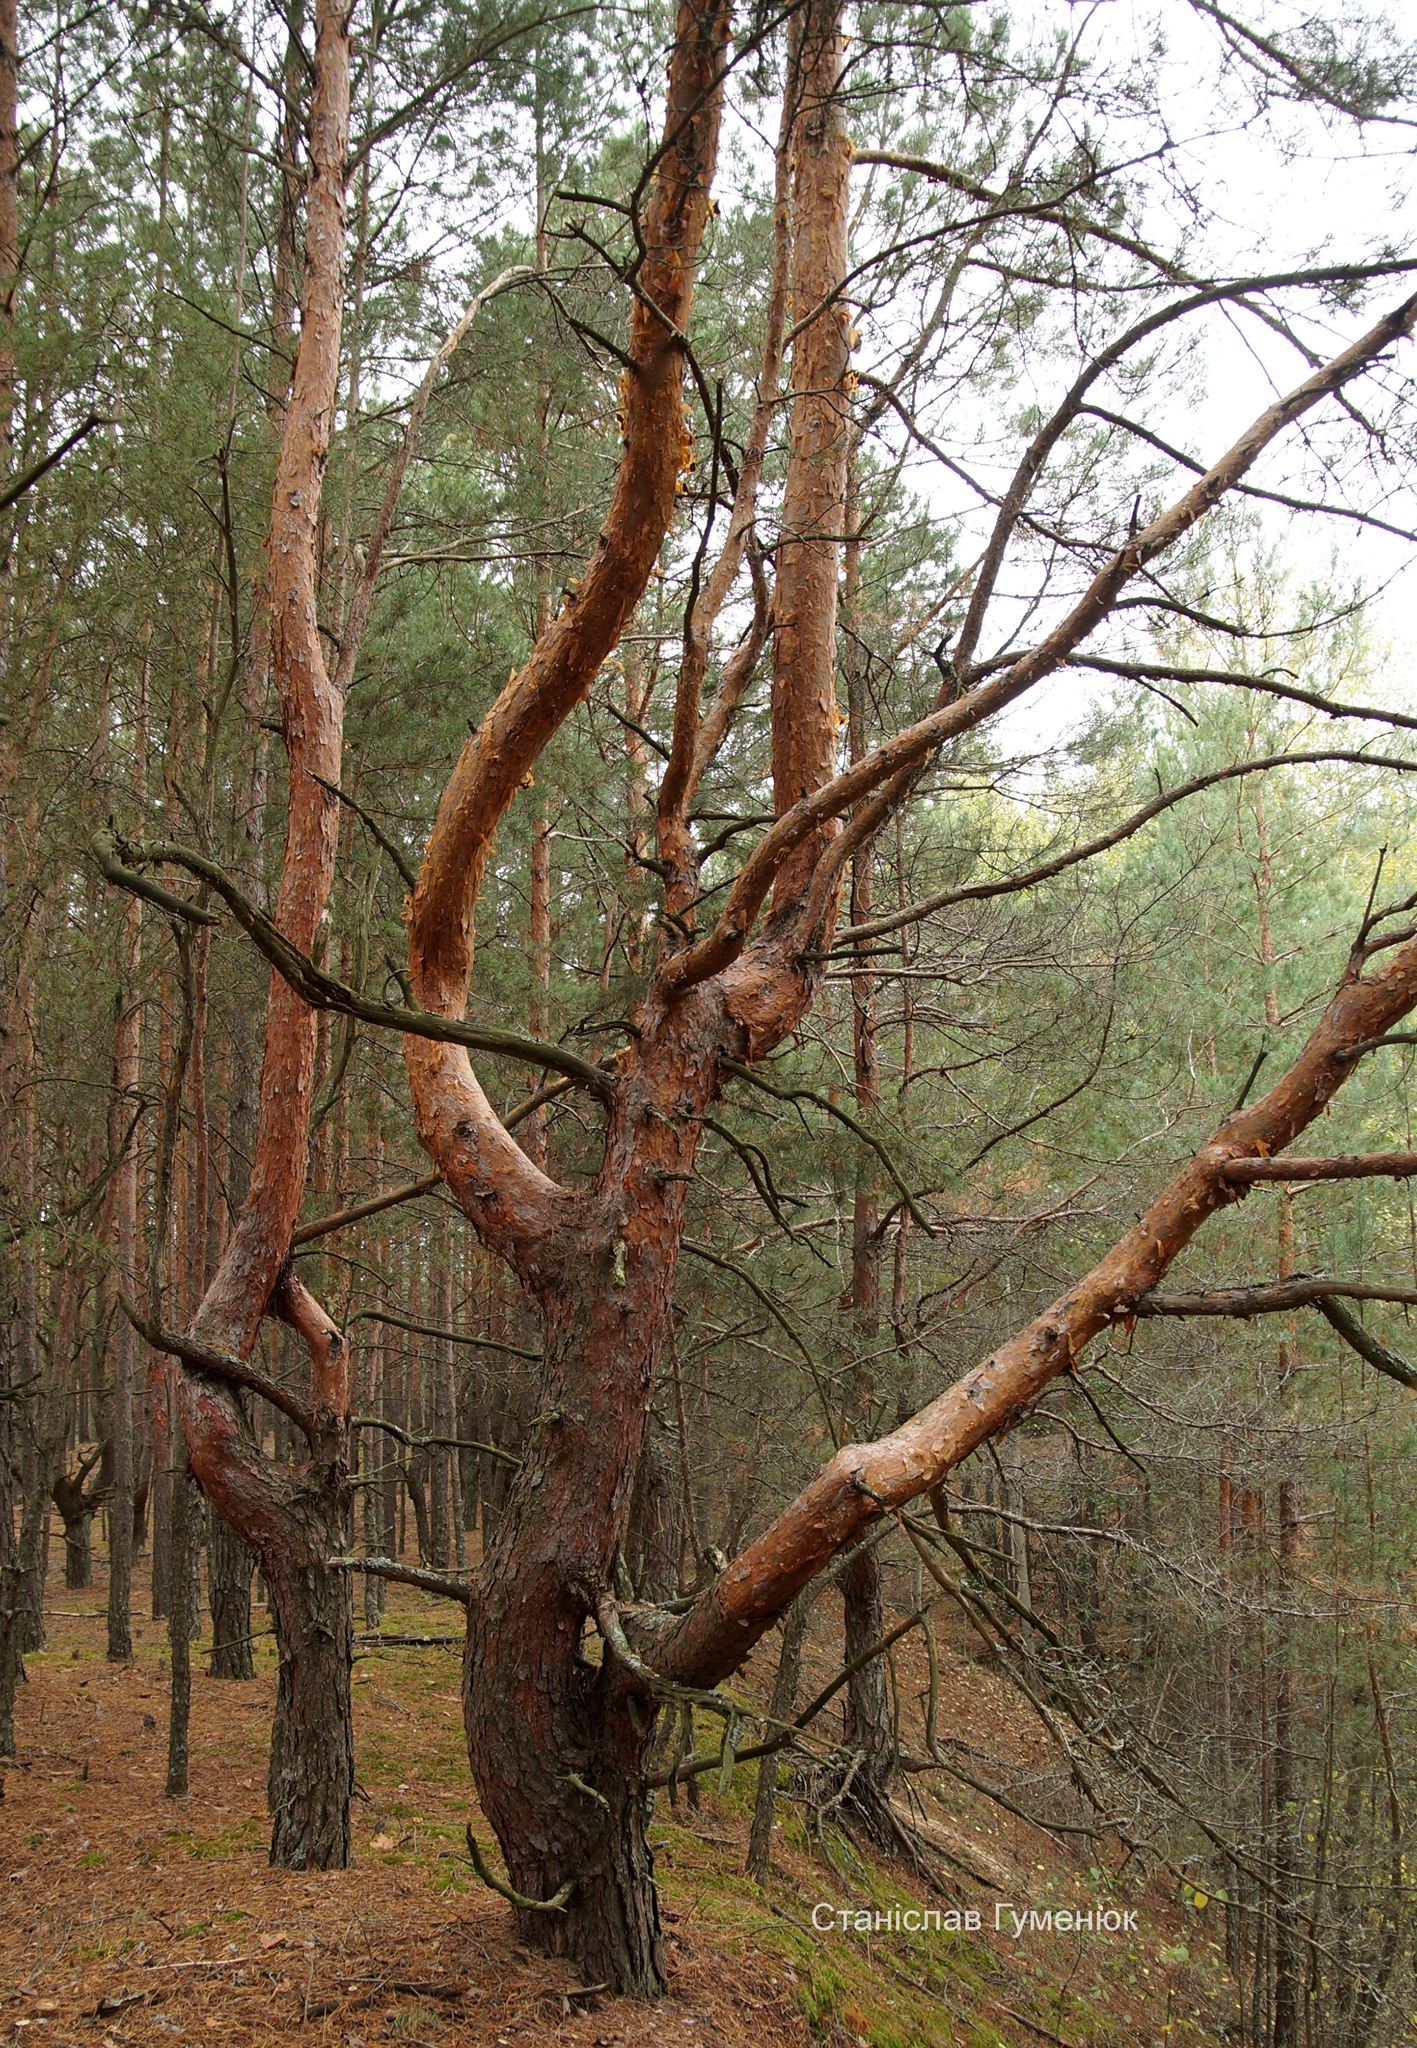 Выкрученные деревья Чернобыльской зоны отчуждения. Фото: Чернобыльский заповедник